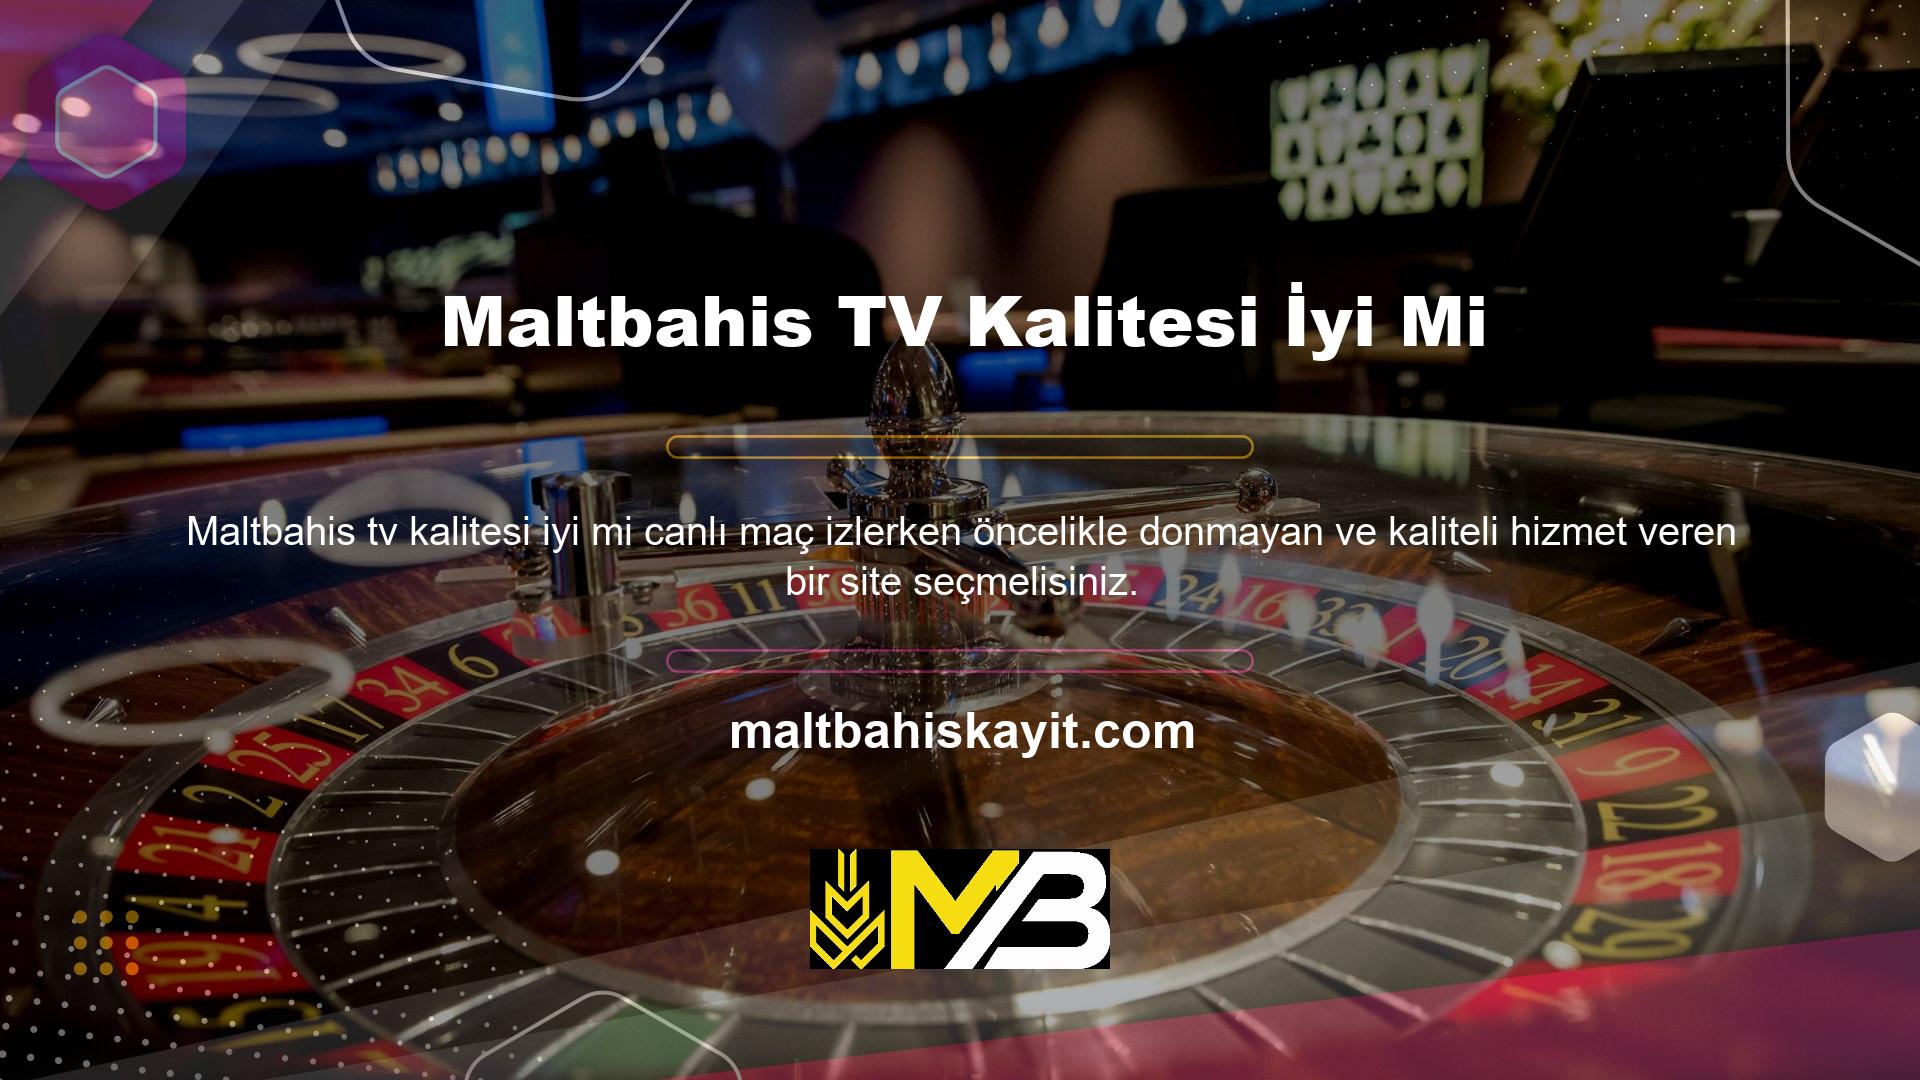 Maltbahis TV'nin görüntü kalitesi iyi mi? TV Access TV web sitesinde sunulan tüm hizmetlerin kalitesi her zaman kanıtlanmıştır